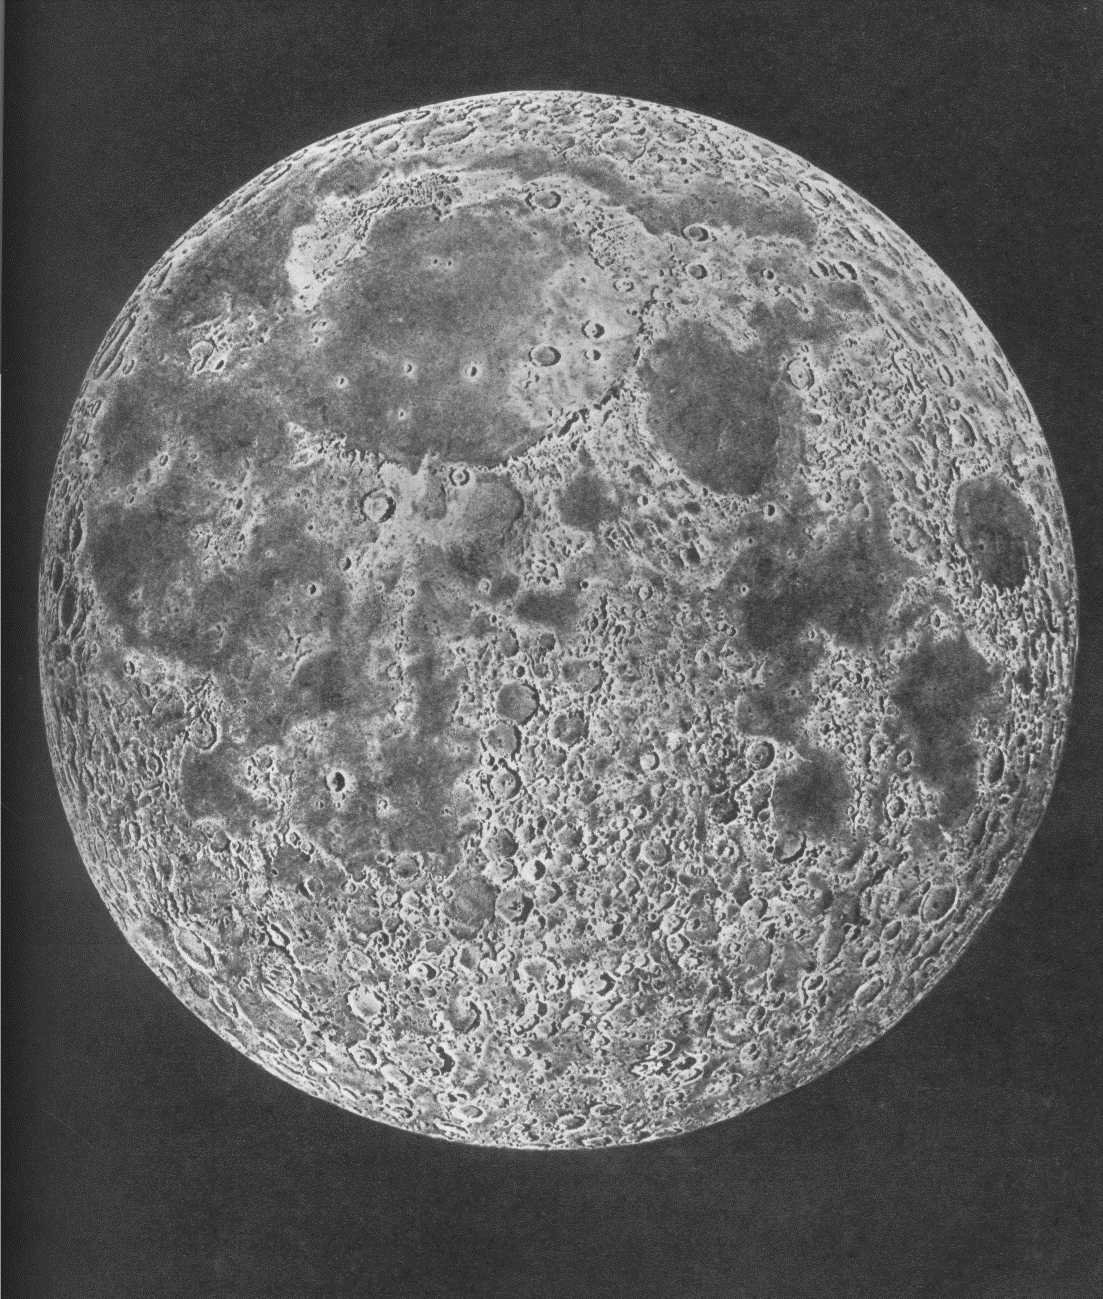 Видео обратной стороны луны. Невидимая сторона Луны. Обратная сторона Луны. Луна снимок обратной стороны Луны. Обратная Невидимая сторона Луны.